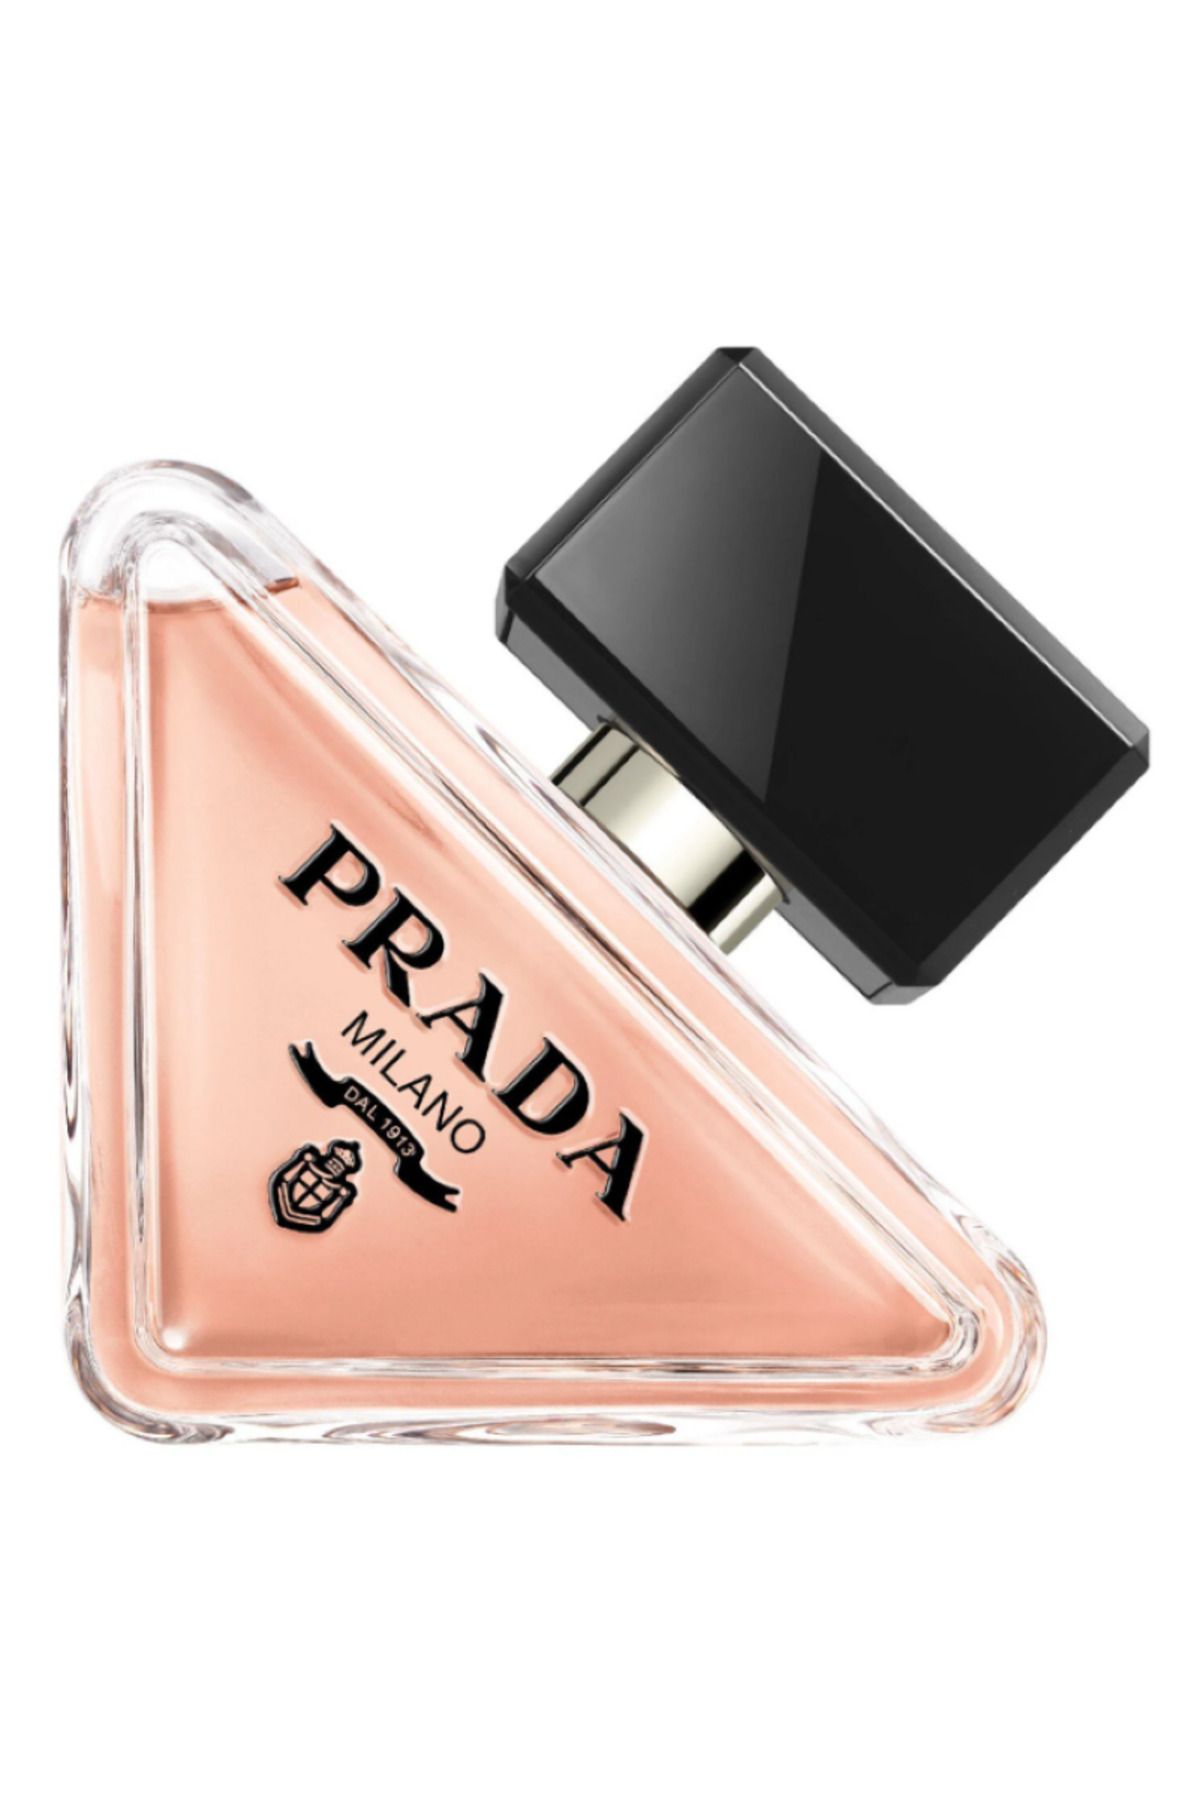 Prada Paradoxe - Eau De Parfum Asla aynı olmamanın ve her zaman kendin olmanın kutlaması 90 ml